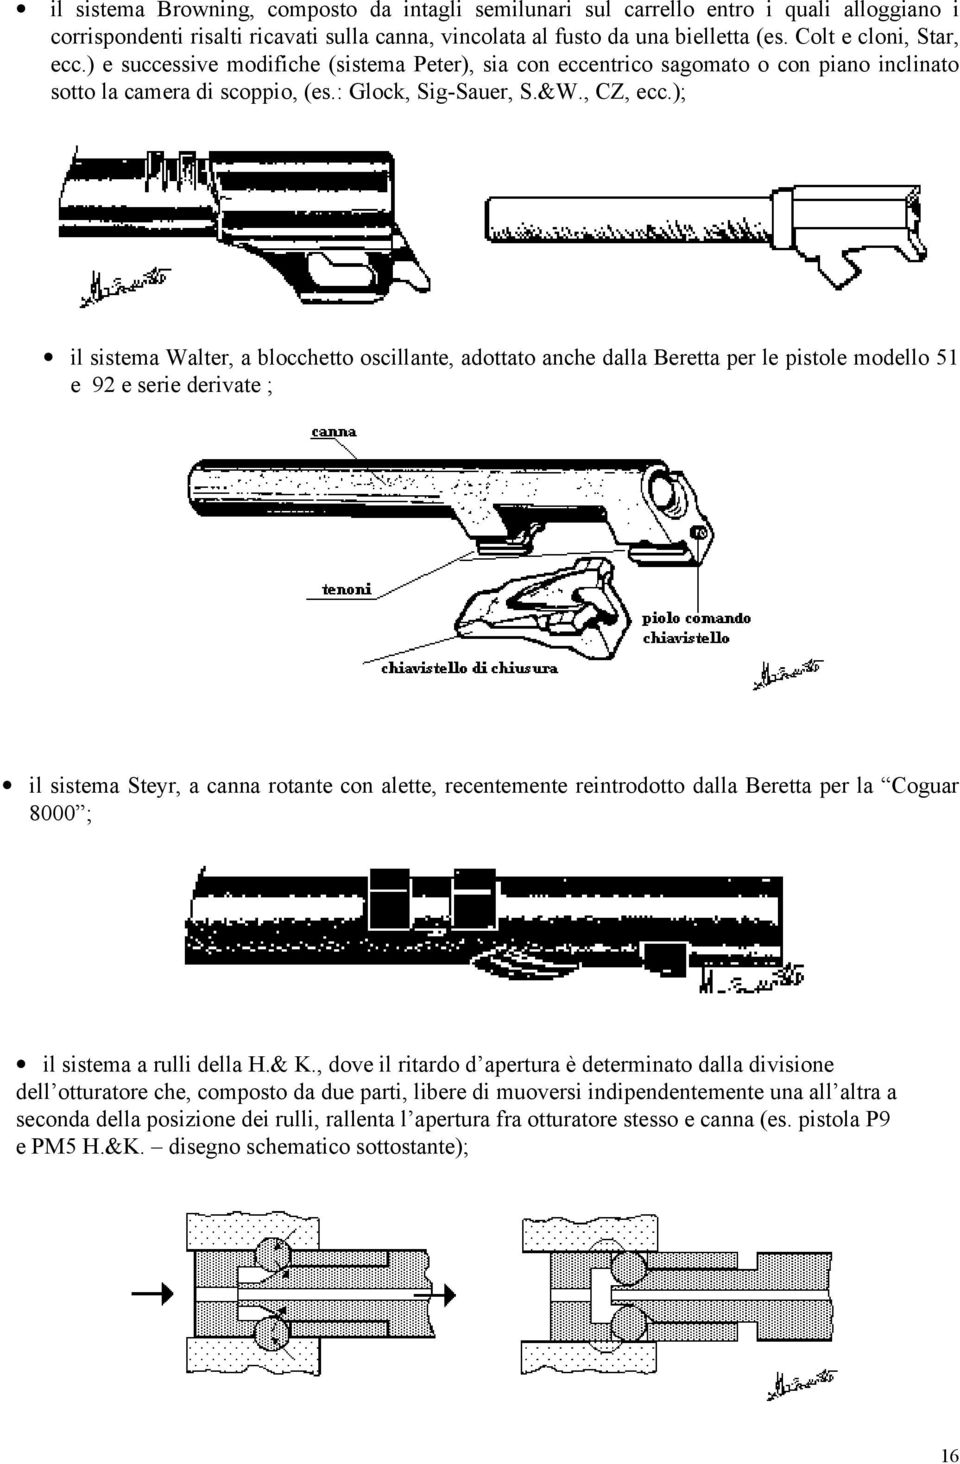 ); il sistema Walter, a blocchetto oscillante, adottato anche dalla Beretta per le pistole modello 51 e 92 e serie derivate ; il sistema Steyr, a canna rotante con alette, recentemente reintrodotto